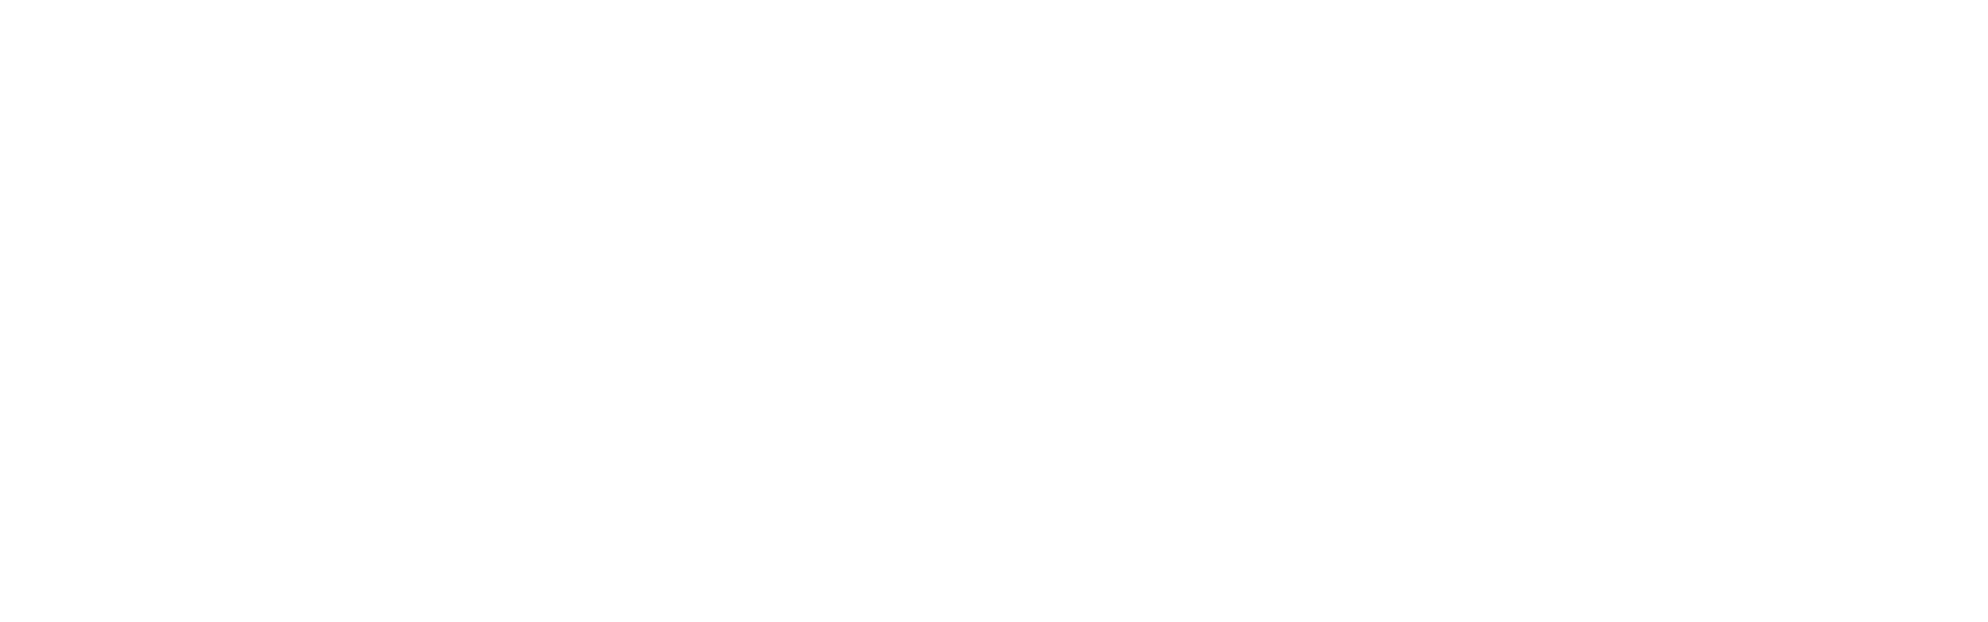 OpenFF Units documentation logo